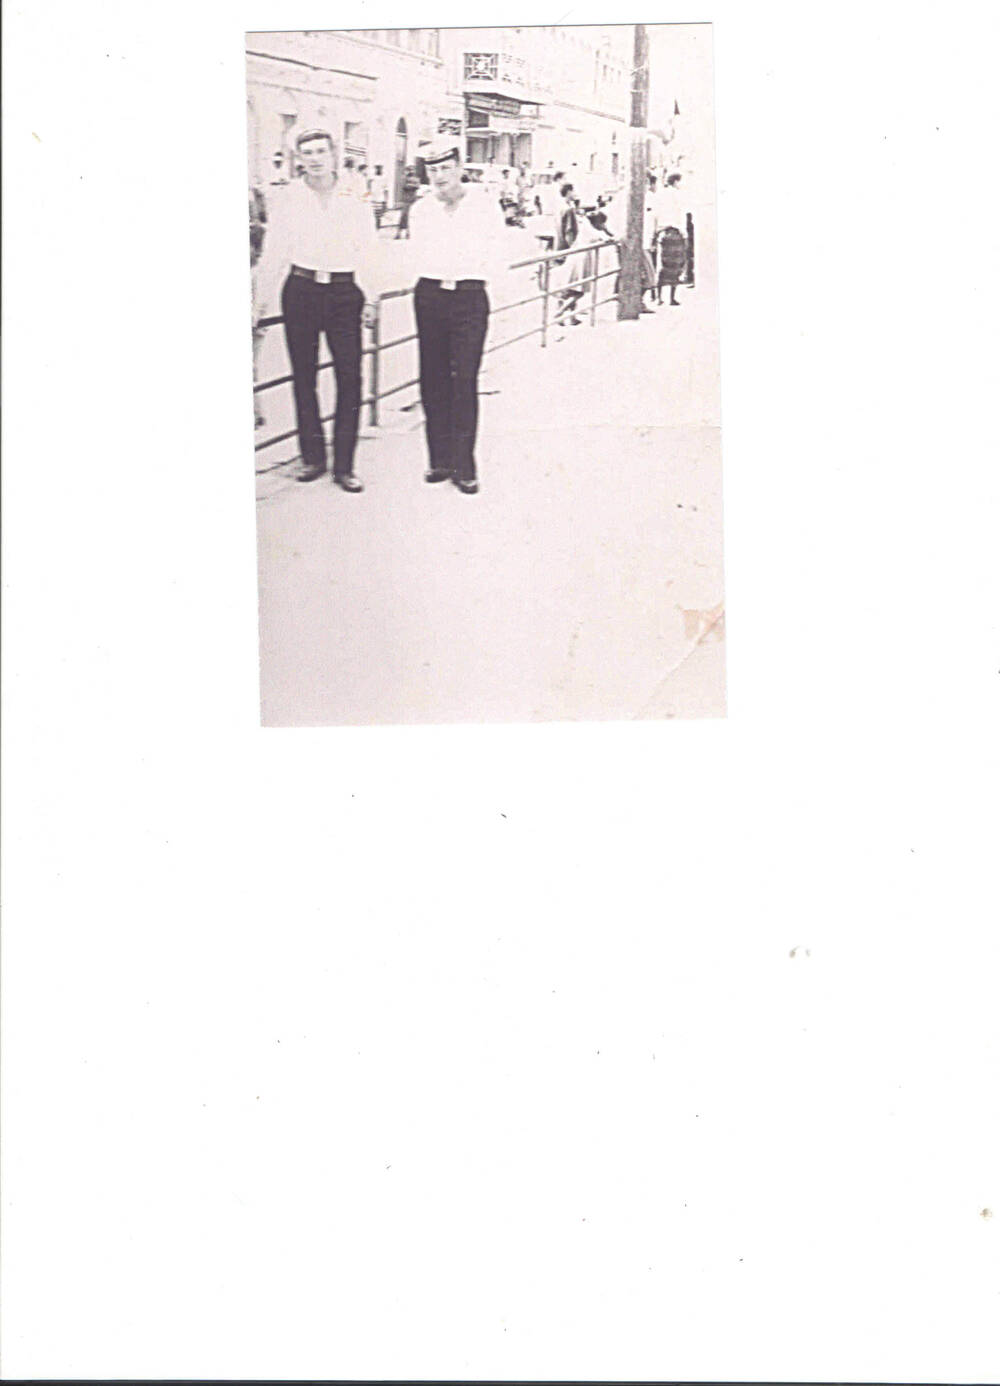 Фотография - копия
групповая,  двое  моряков  срочной  службы   на  улице  города.